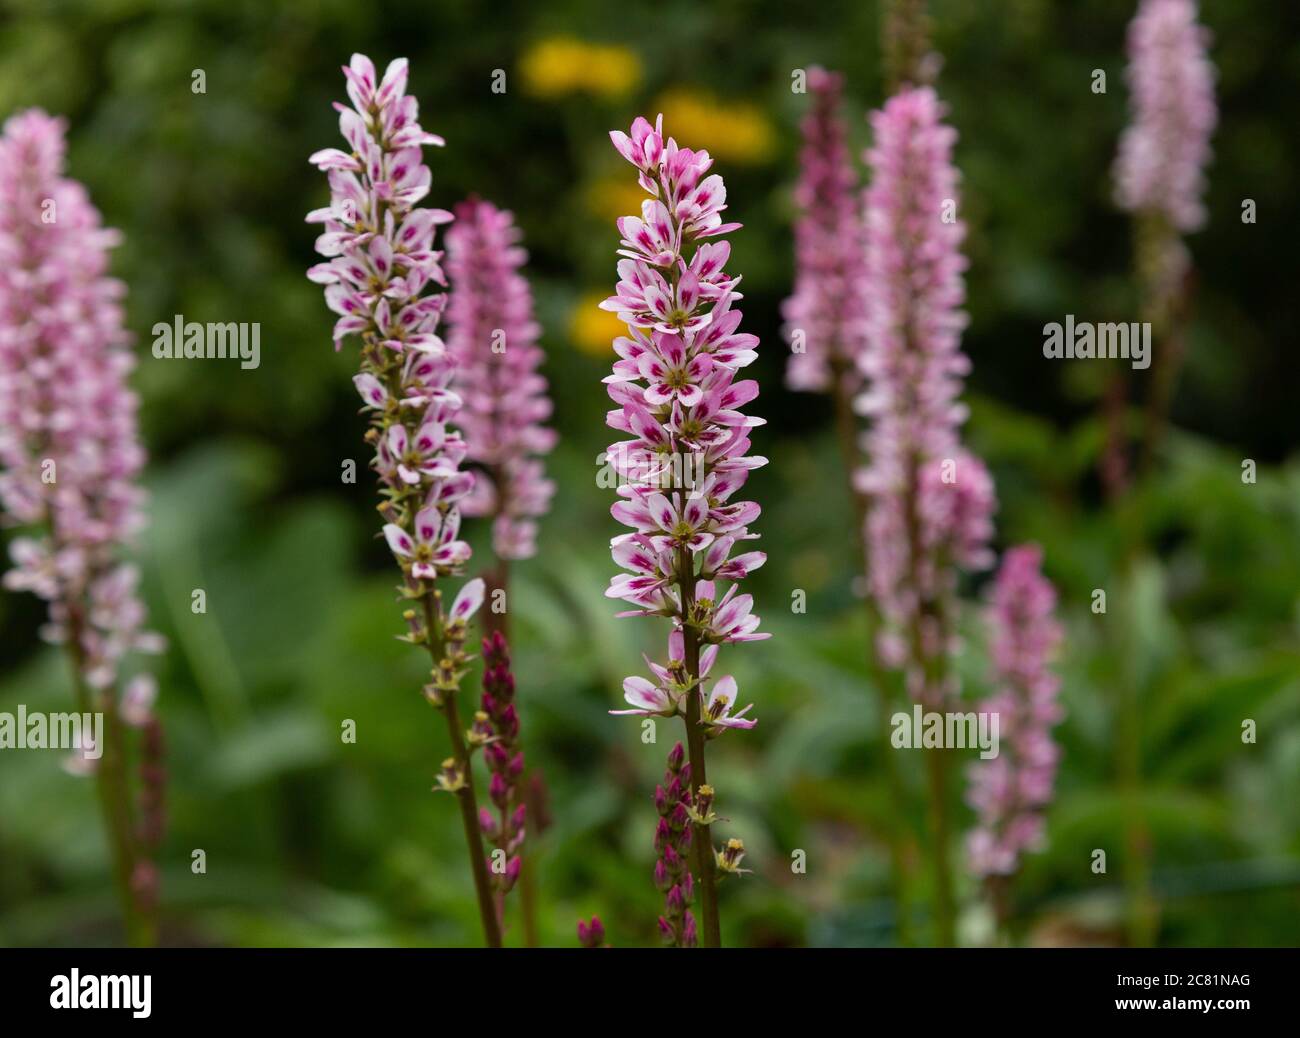 Francoa Sonchifolia flowers. Stock Photo